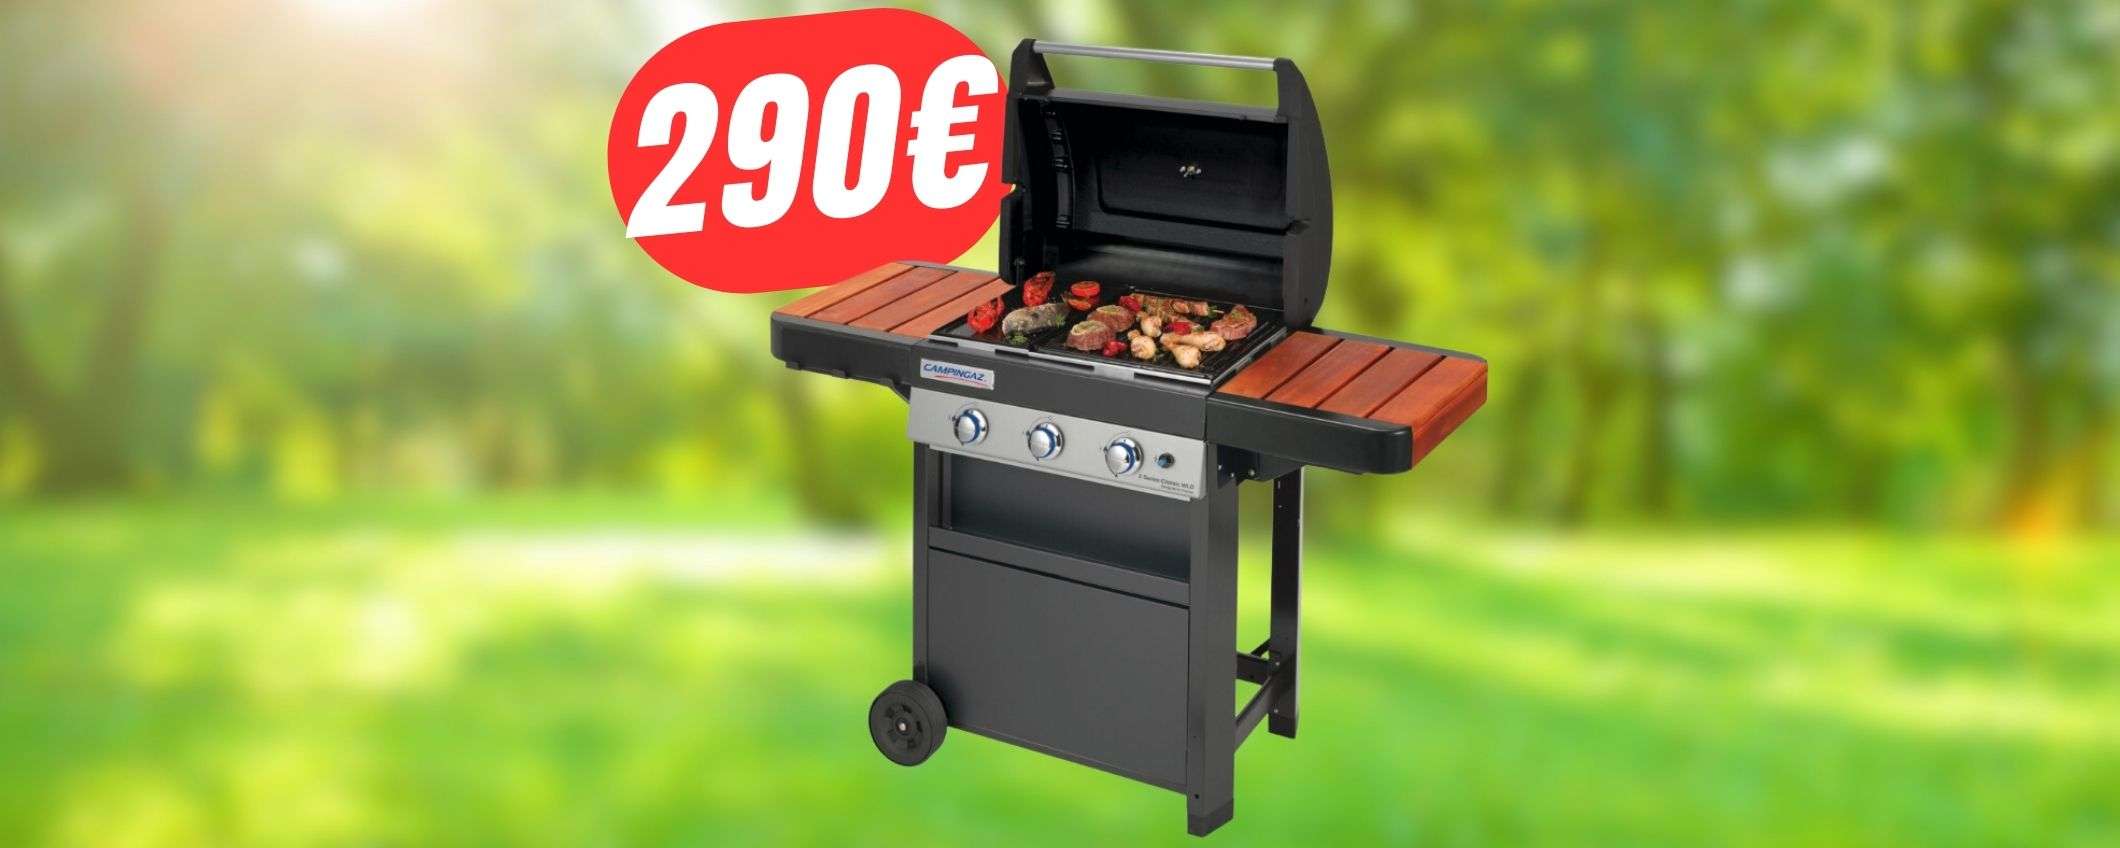 Barbecue a 290€: è la follia eBay con coupon esclusivo!